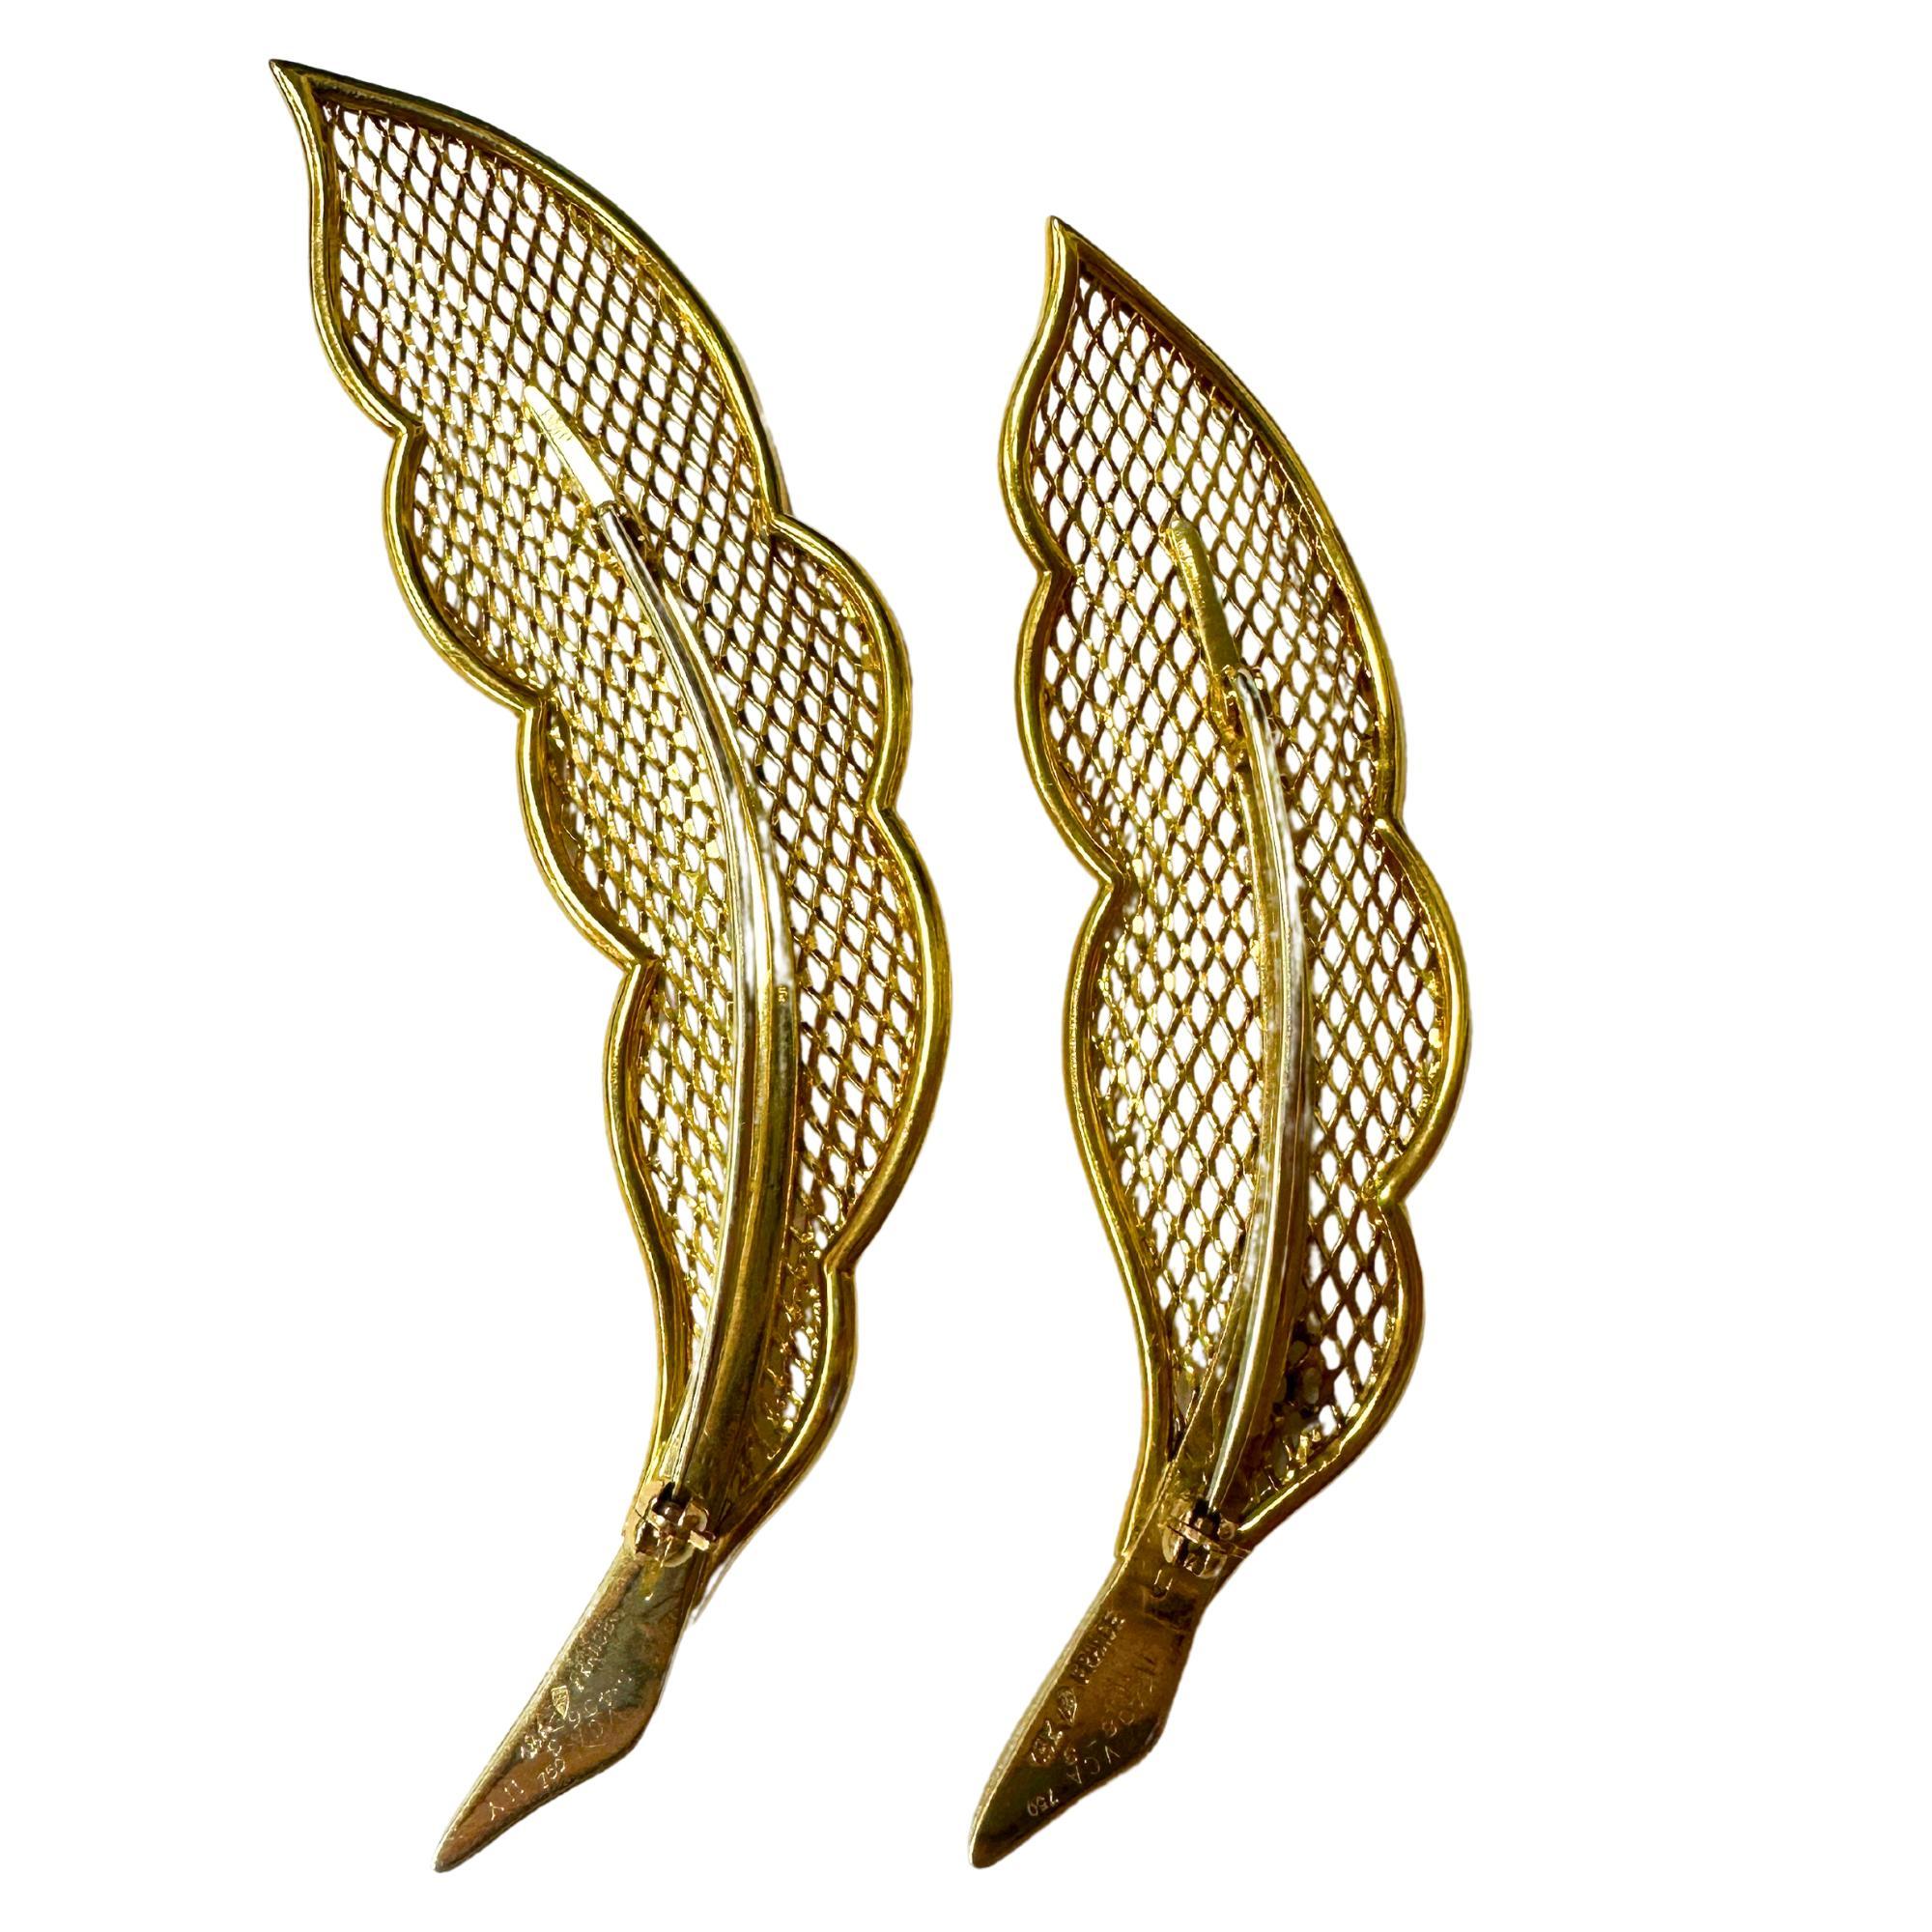 Découvrez le luxe et l'élégance de cette paire de broches en plumes Van Cleef and Arpels 18k. Fabriquées en or jaune 18 carats avec des marquages complexes 